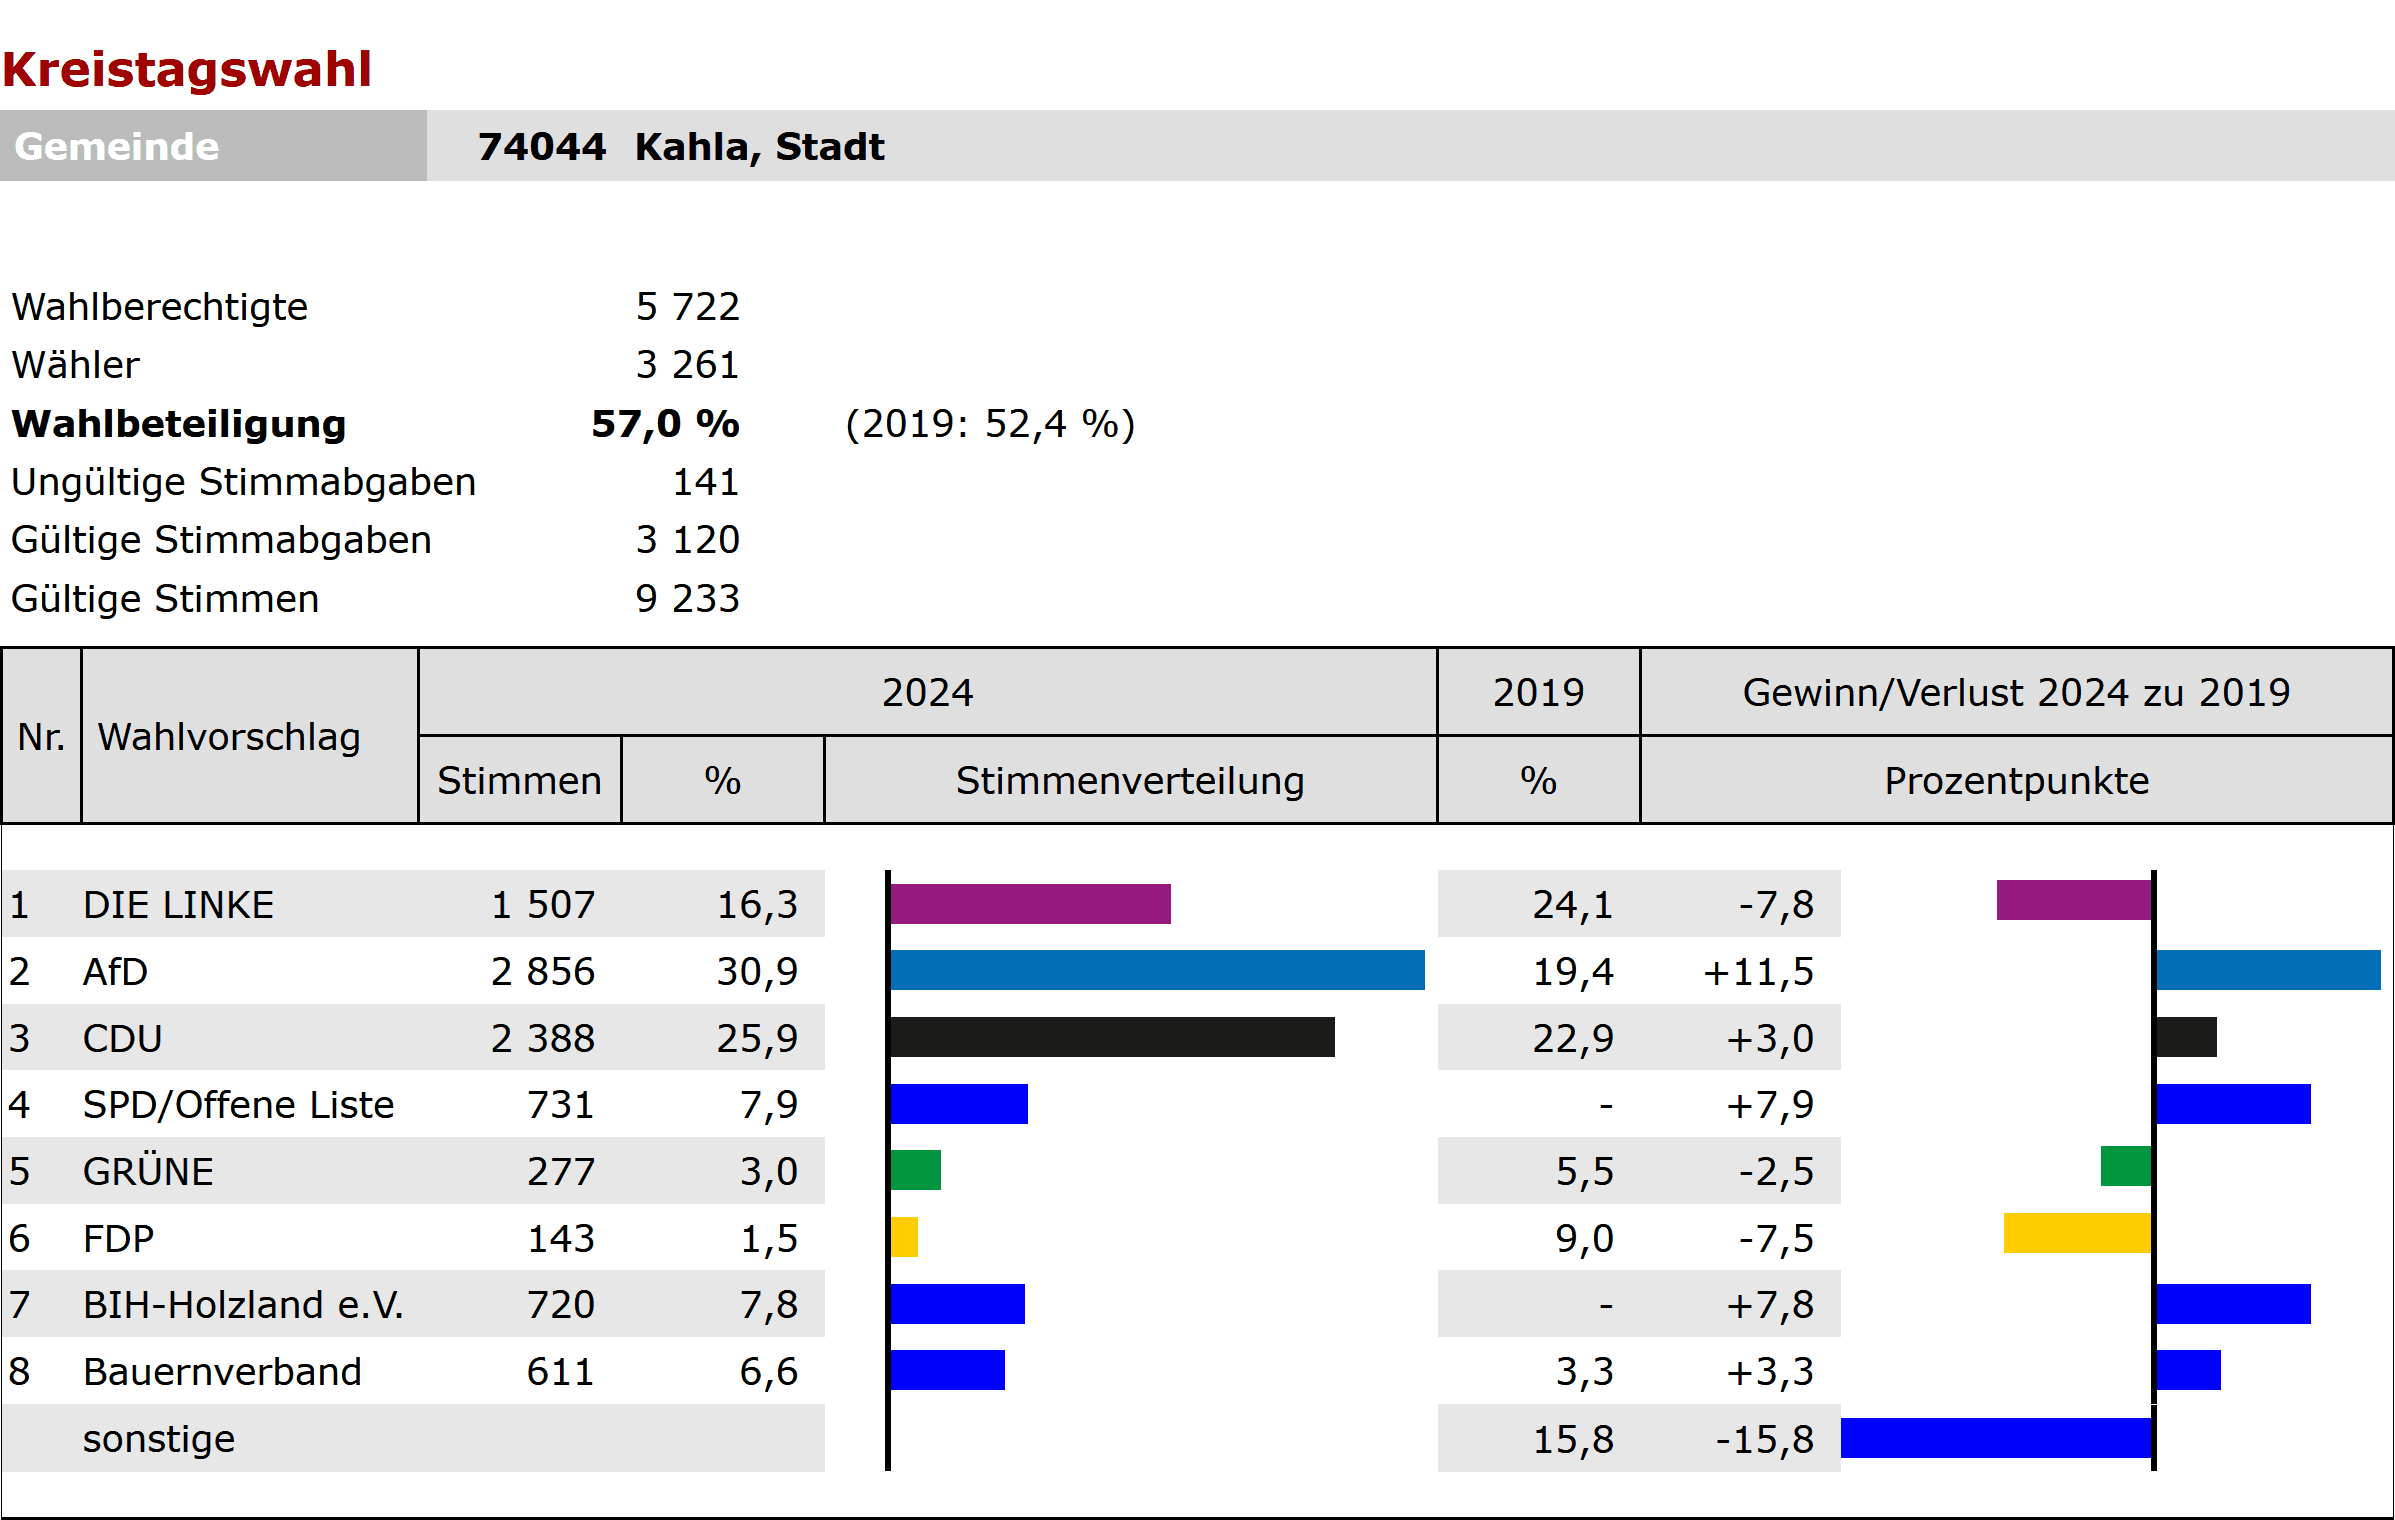 Ergebnisse der Kreistagswahl der Stadt Kahla 2024